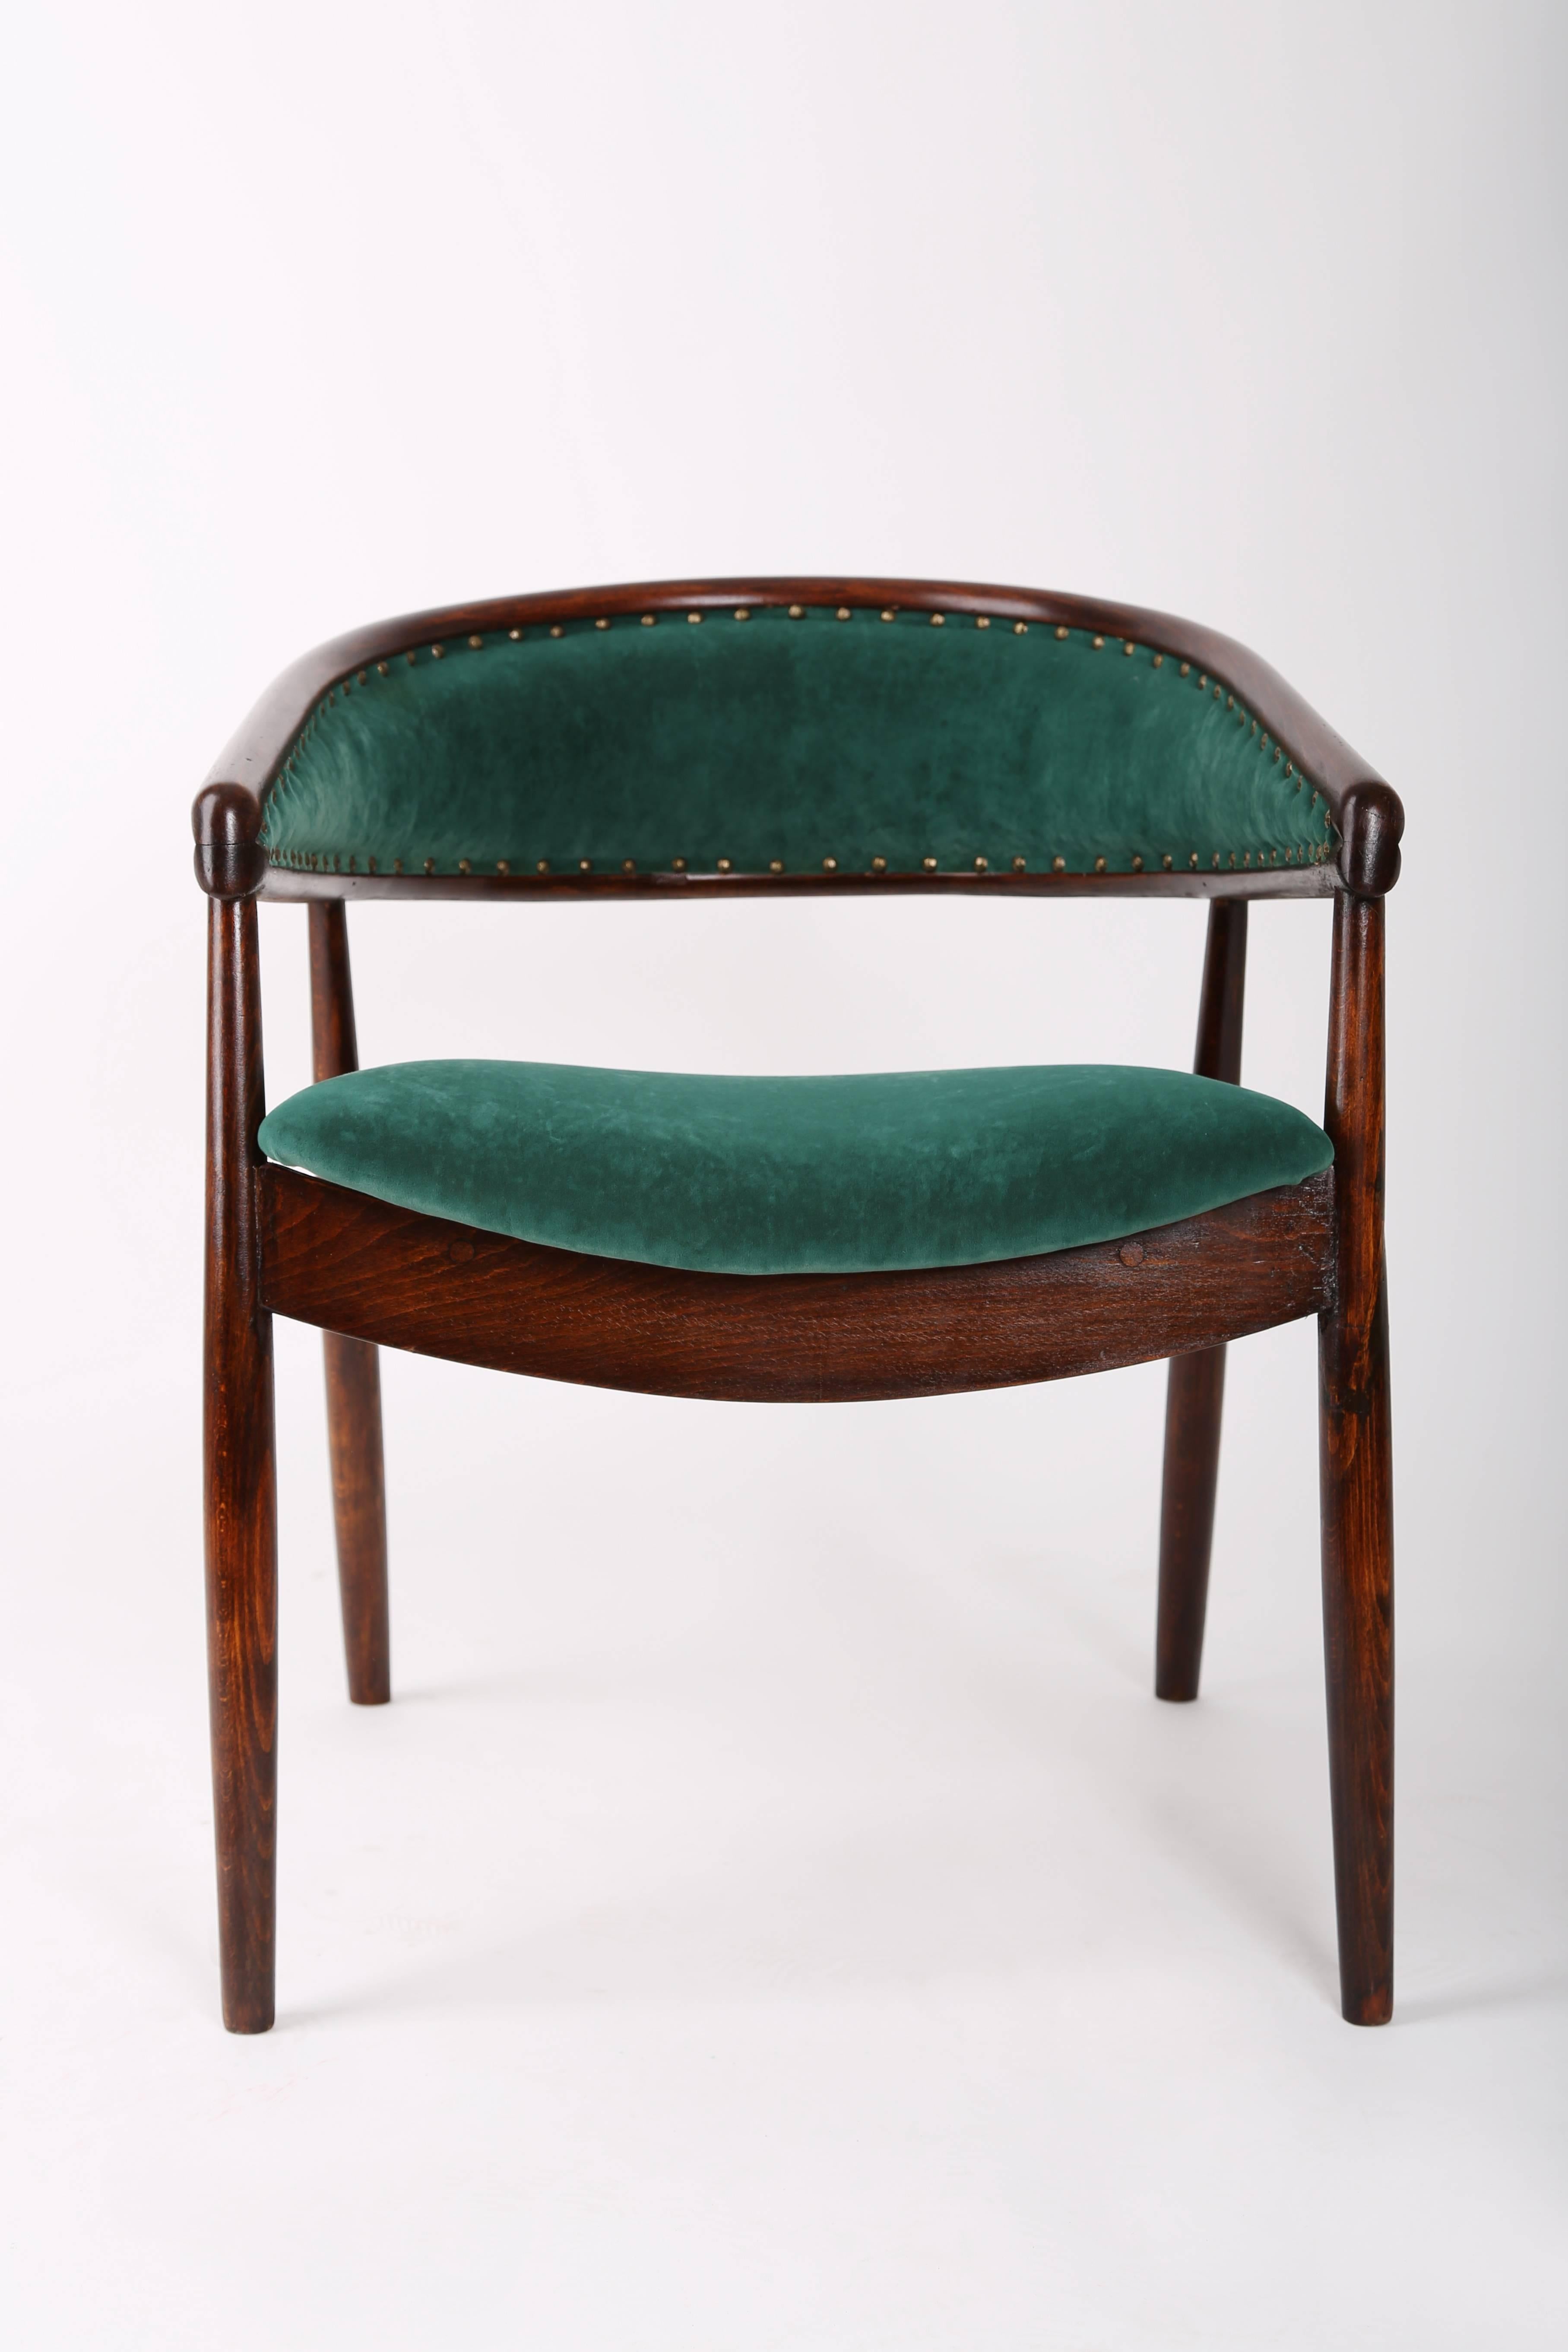 Ein superbequemer Sessel, hergestellt in den 1960er Jahren in Polen. Der Sessel aus Bugholz wurde in Radomsko hergestellt. Sehr komfortabel und schön. Perfekt für minimalistische Innenräume. Der Sessel ist nach dem Schreinern und Polstern renoviert.